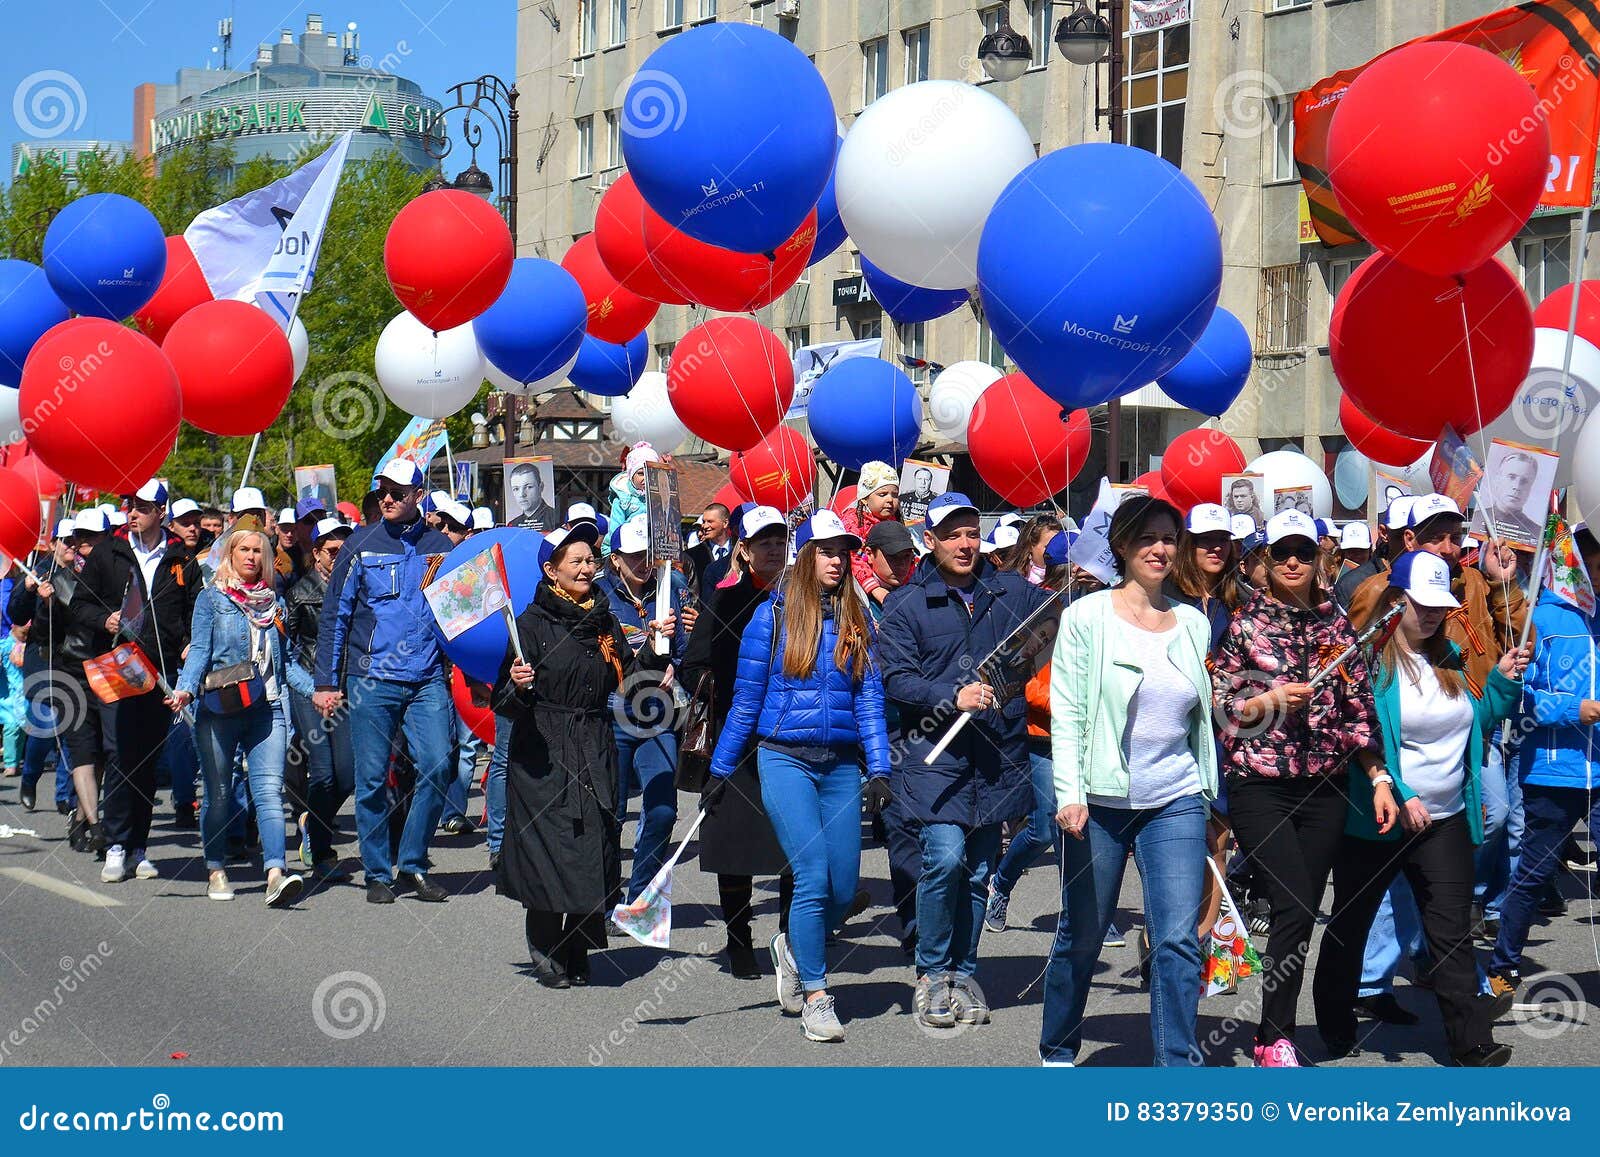 5 мая выходит. Шествие с шарами. Праздничное шествие с воздушными шарами. С воздушными шарами на демонстрации. Демонстрация с воздушными шариками.